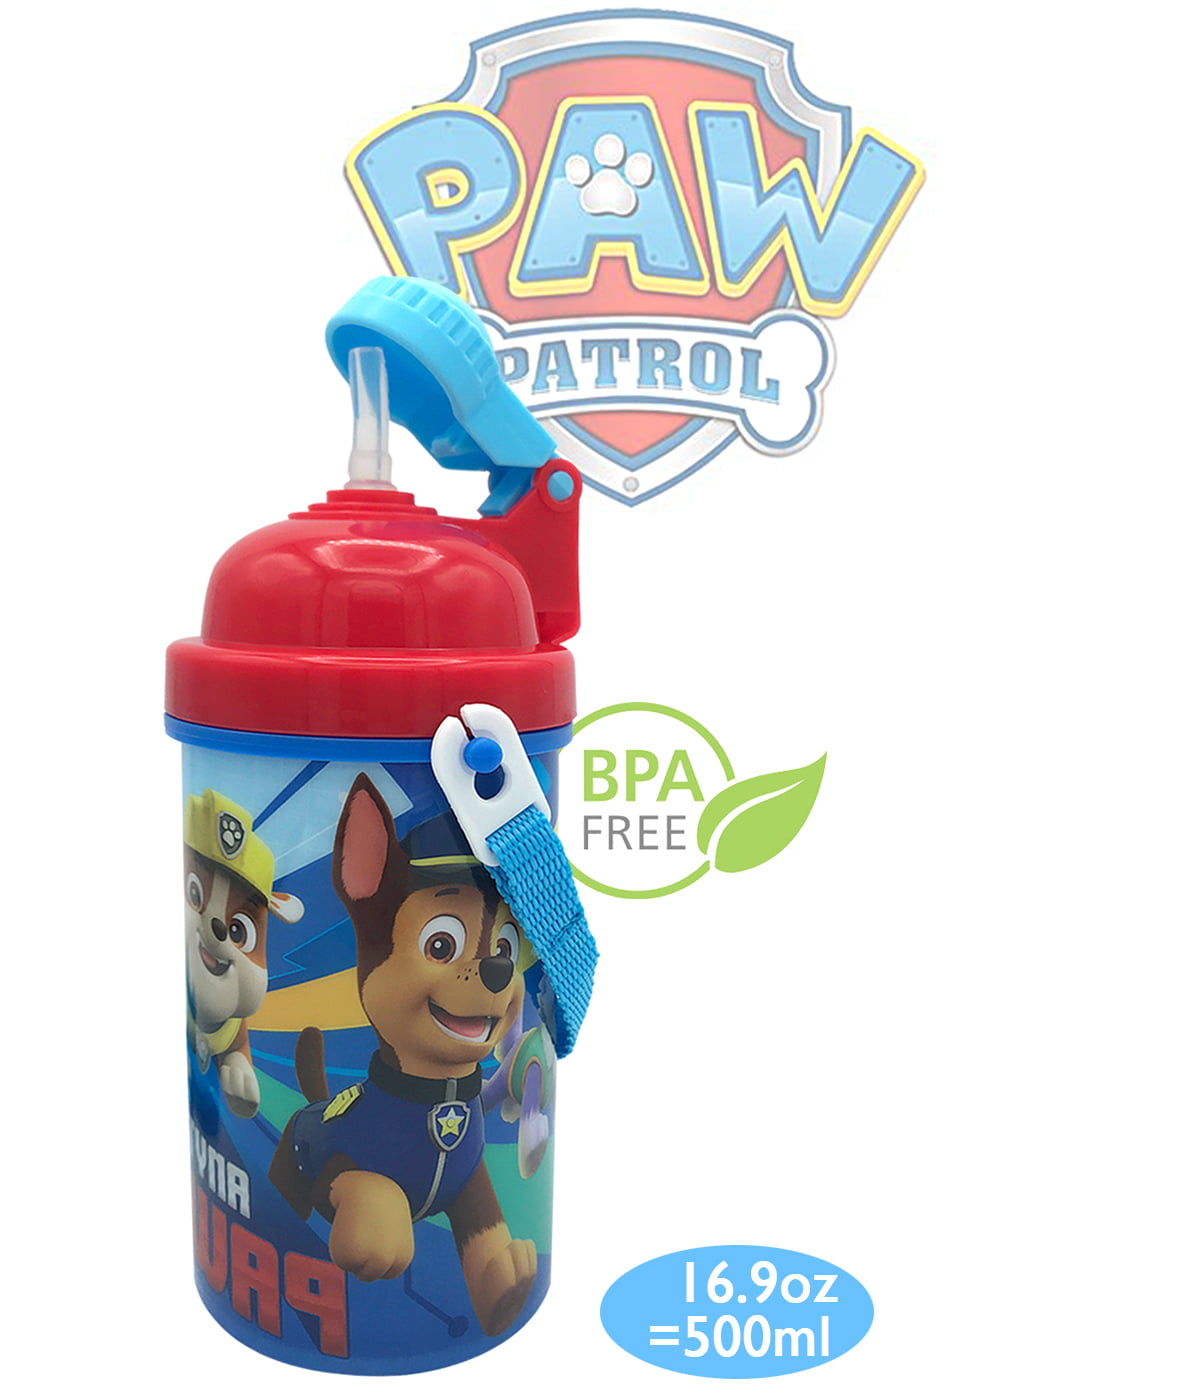 Genuine Paw patrol kids Feeding Bottle with straw – Kids Toys